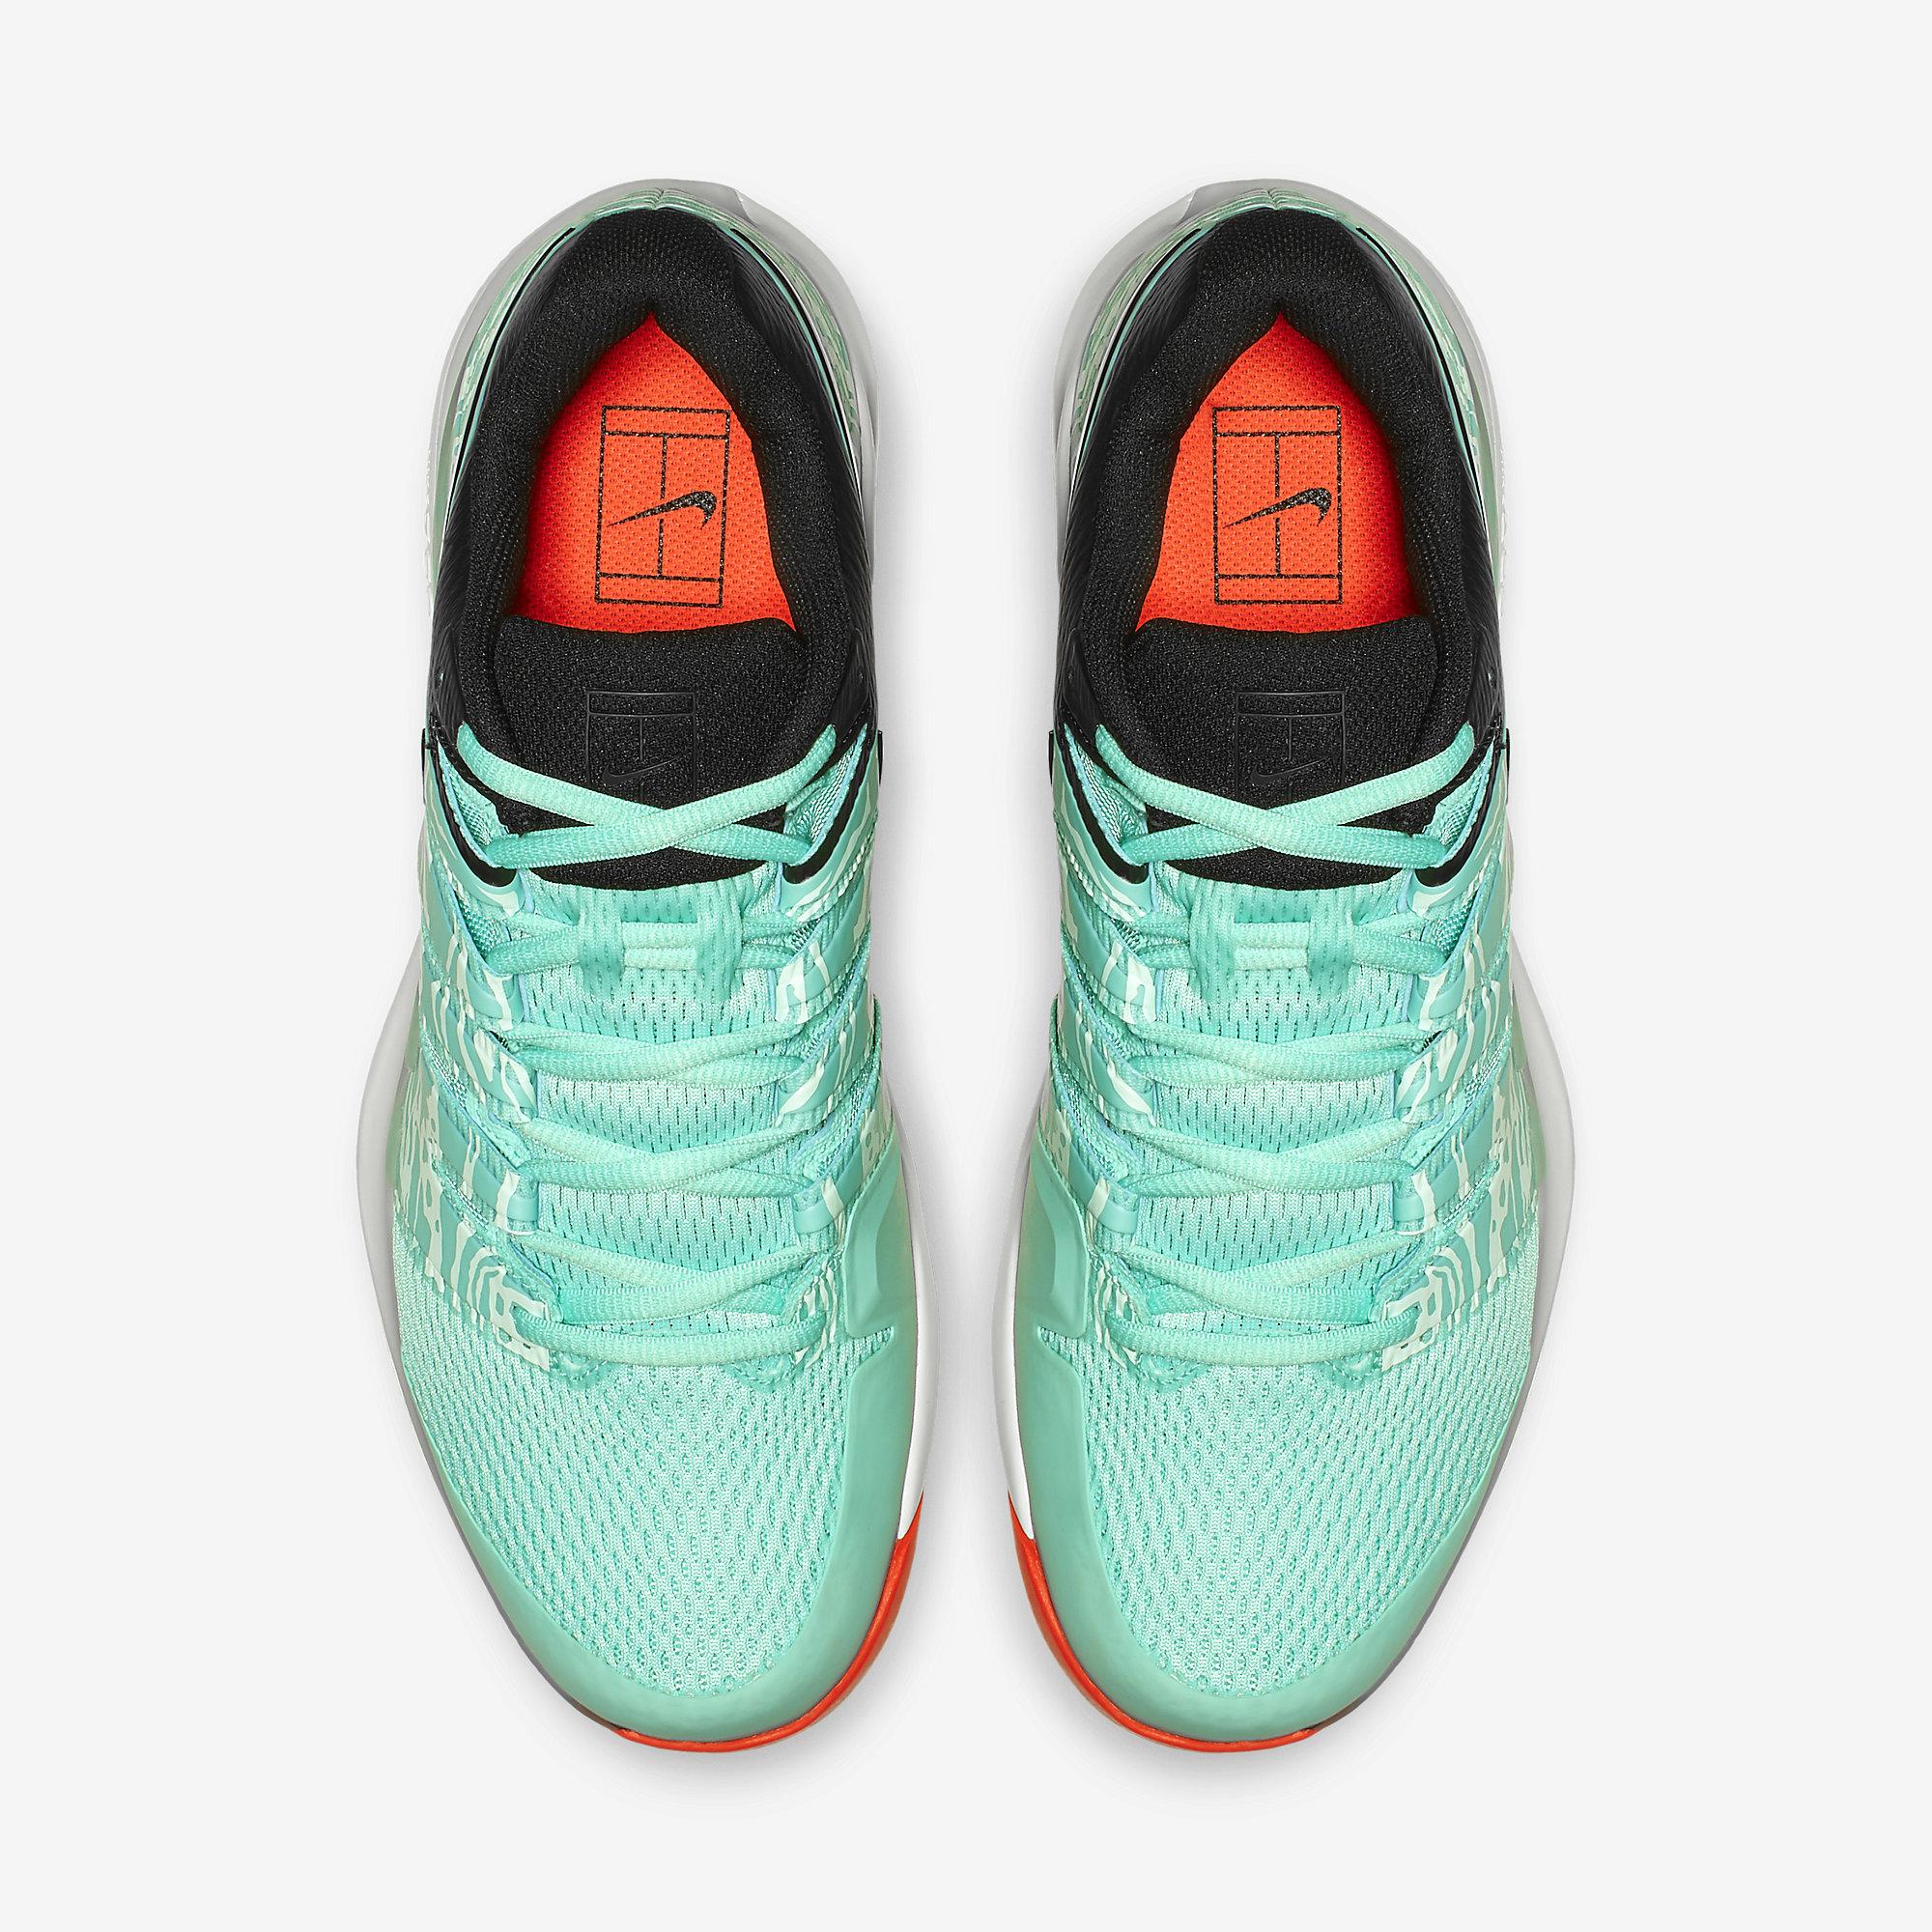 Nike Mens Air Zoom Vapor X Tennis Shoes - Aurora/Teal Tint - Tennisnuts.com